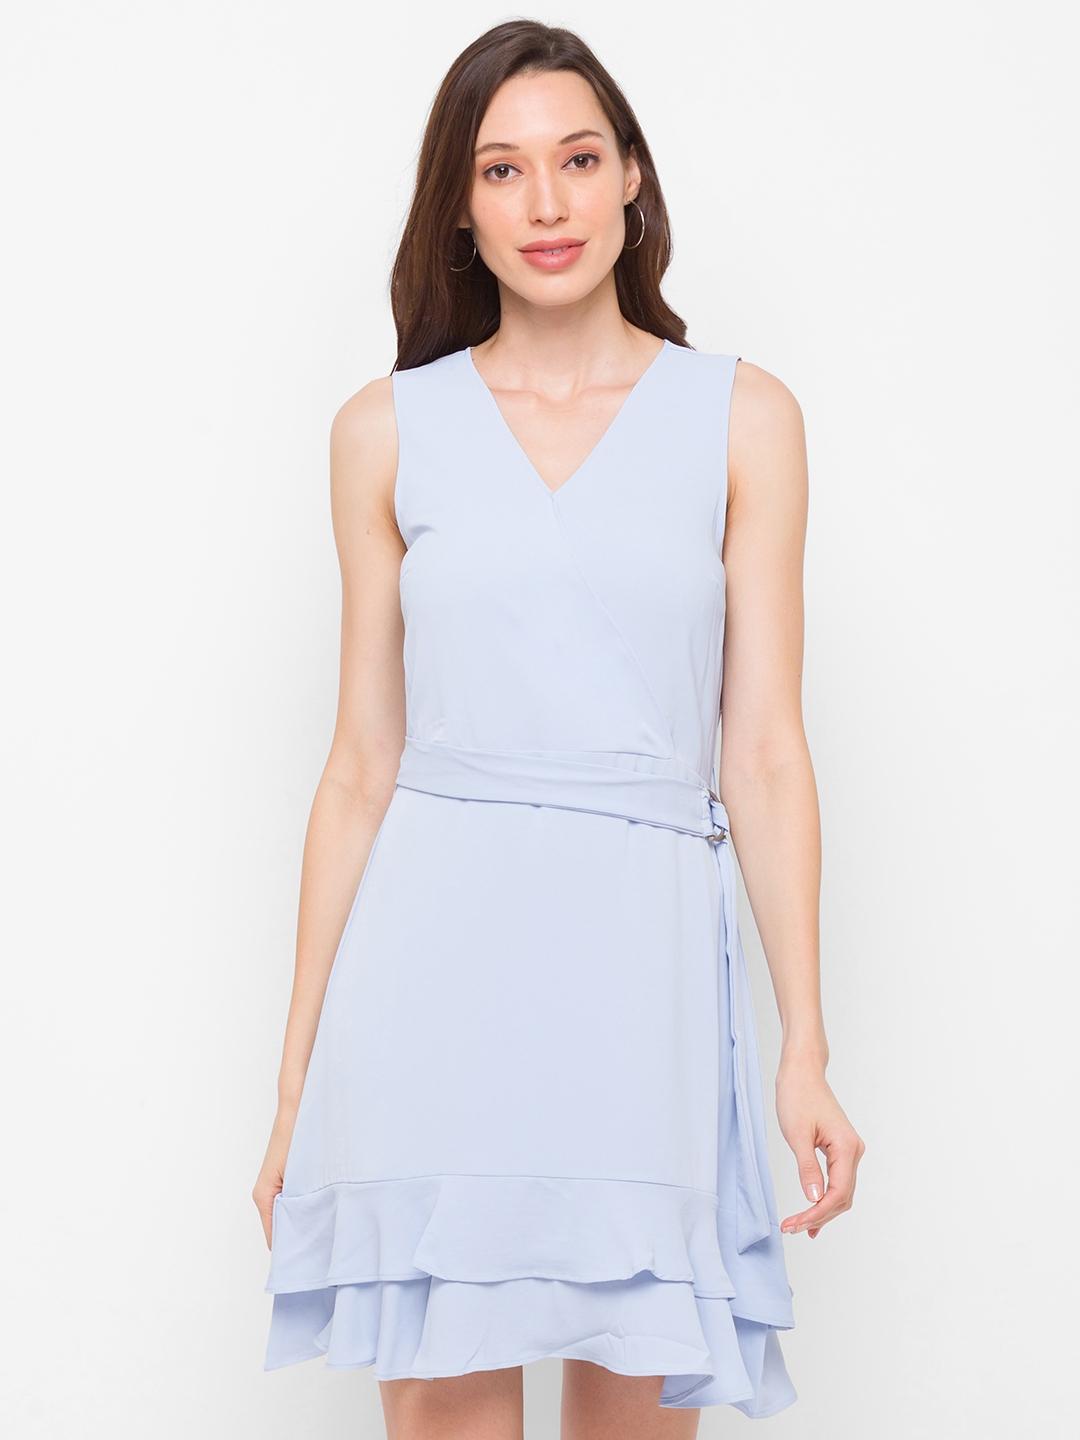 globus | Globus Solid Blue Dress